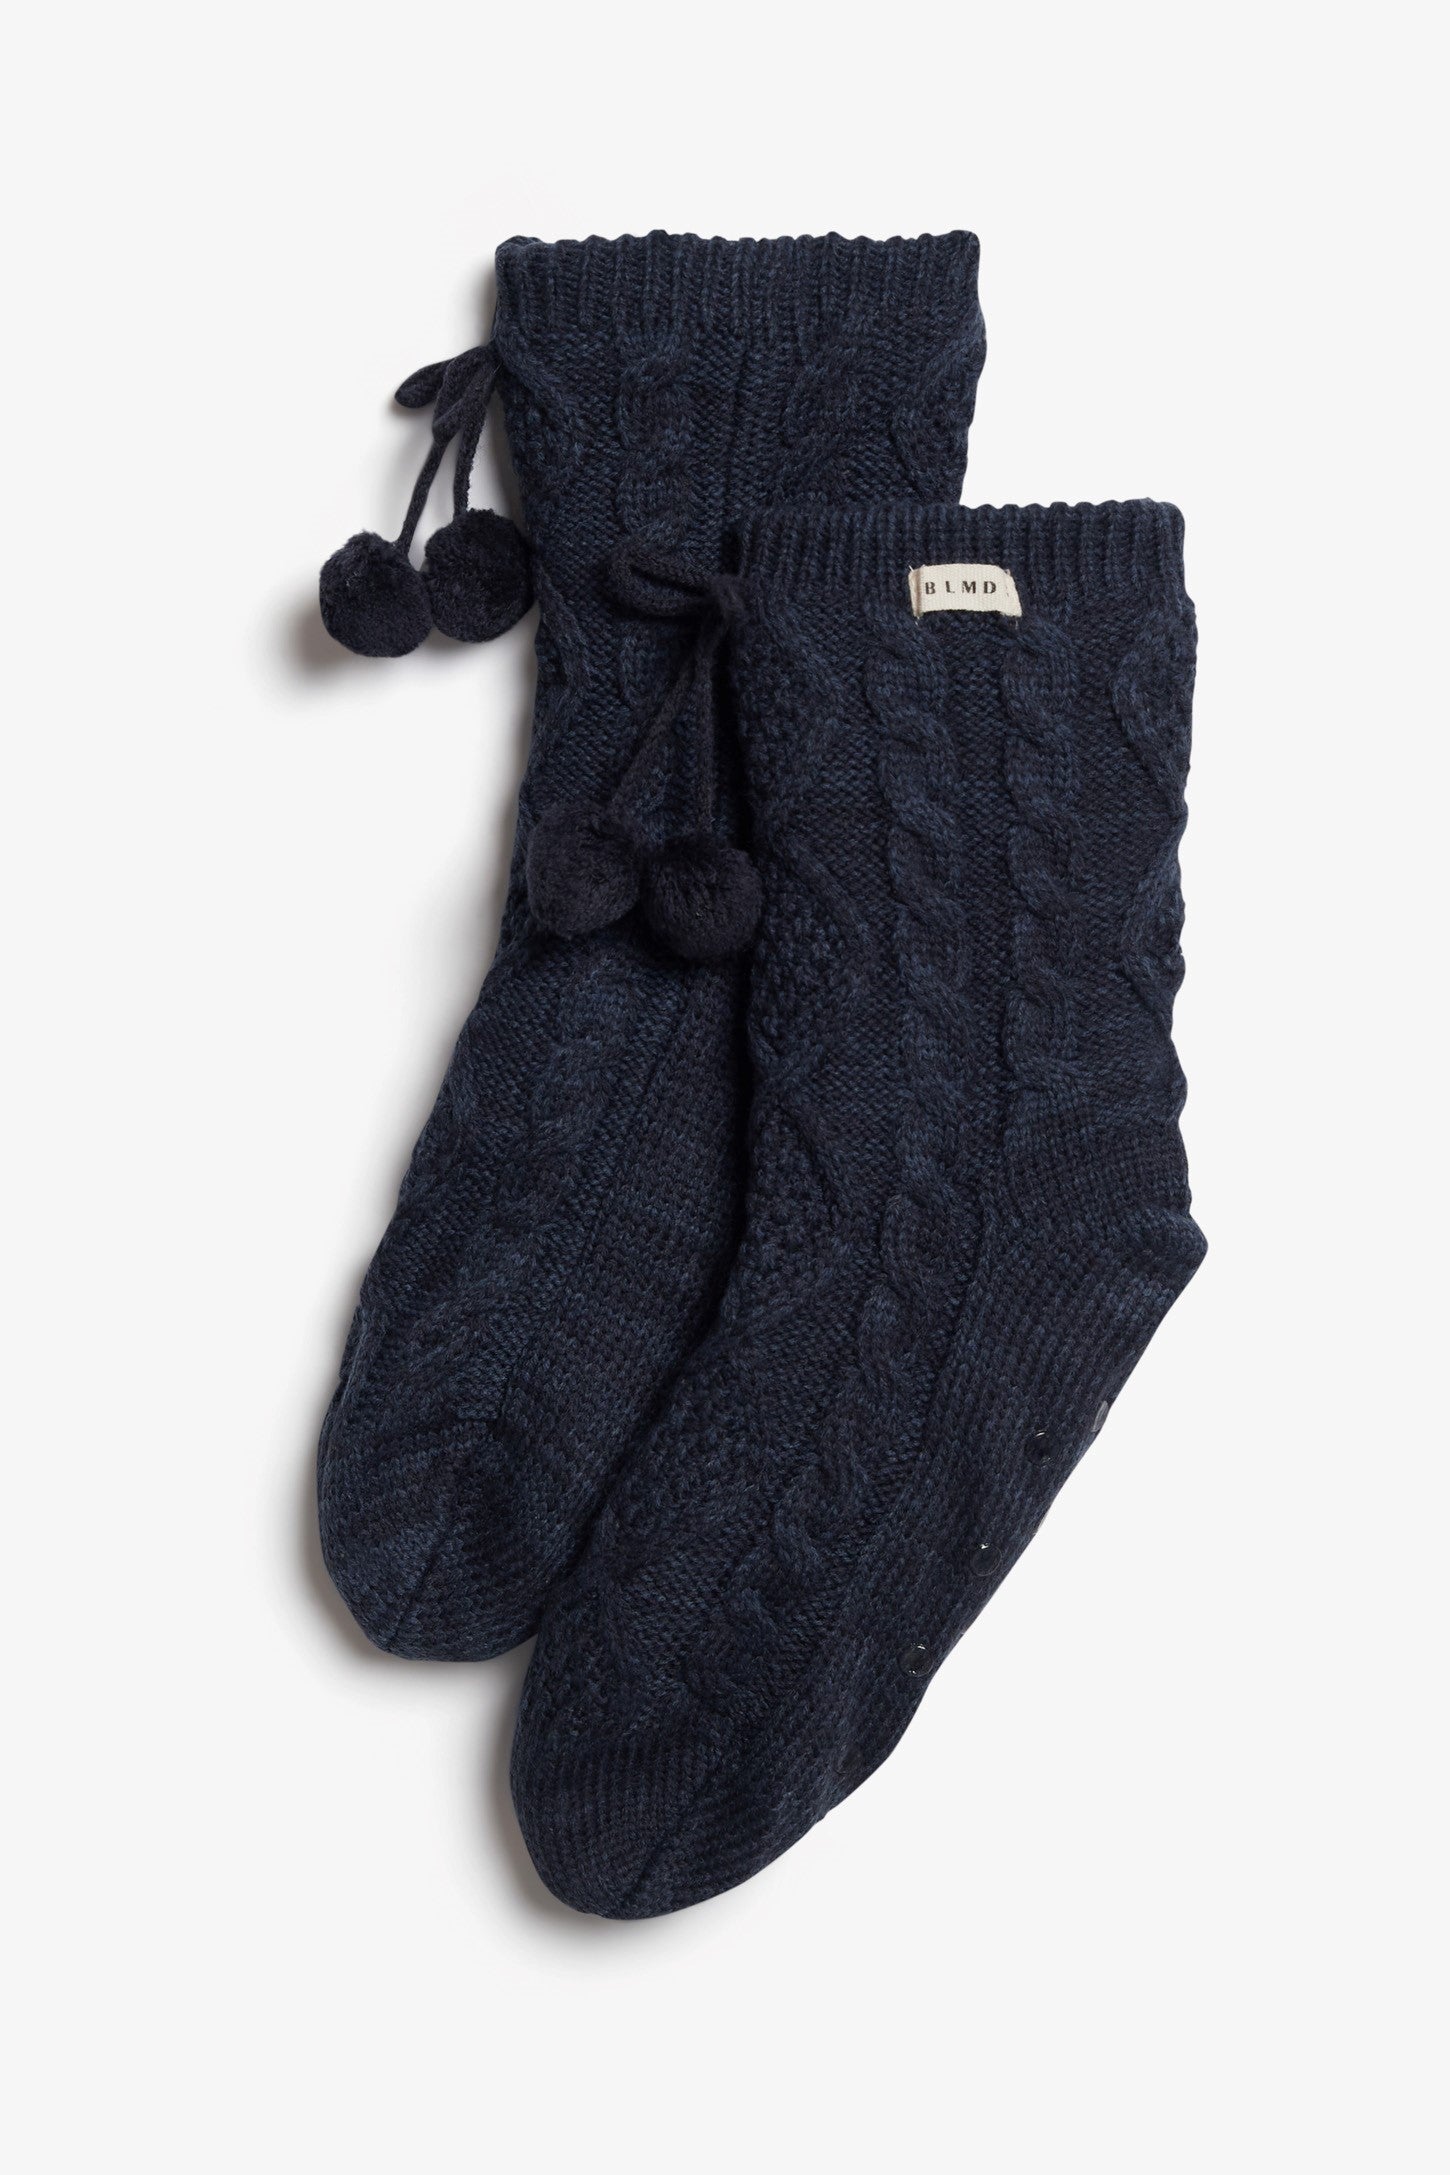 Chaussettes en tricot câblé et sherpa, 2/20$ - Ado fille && DENIM